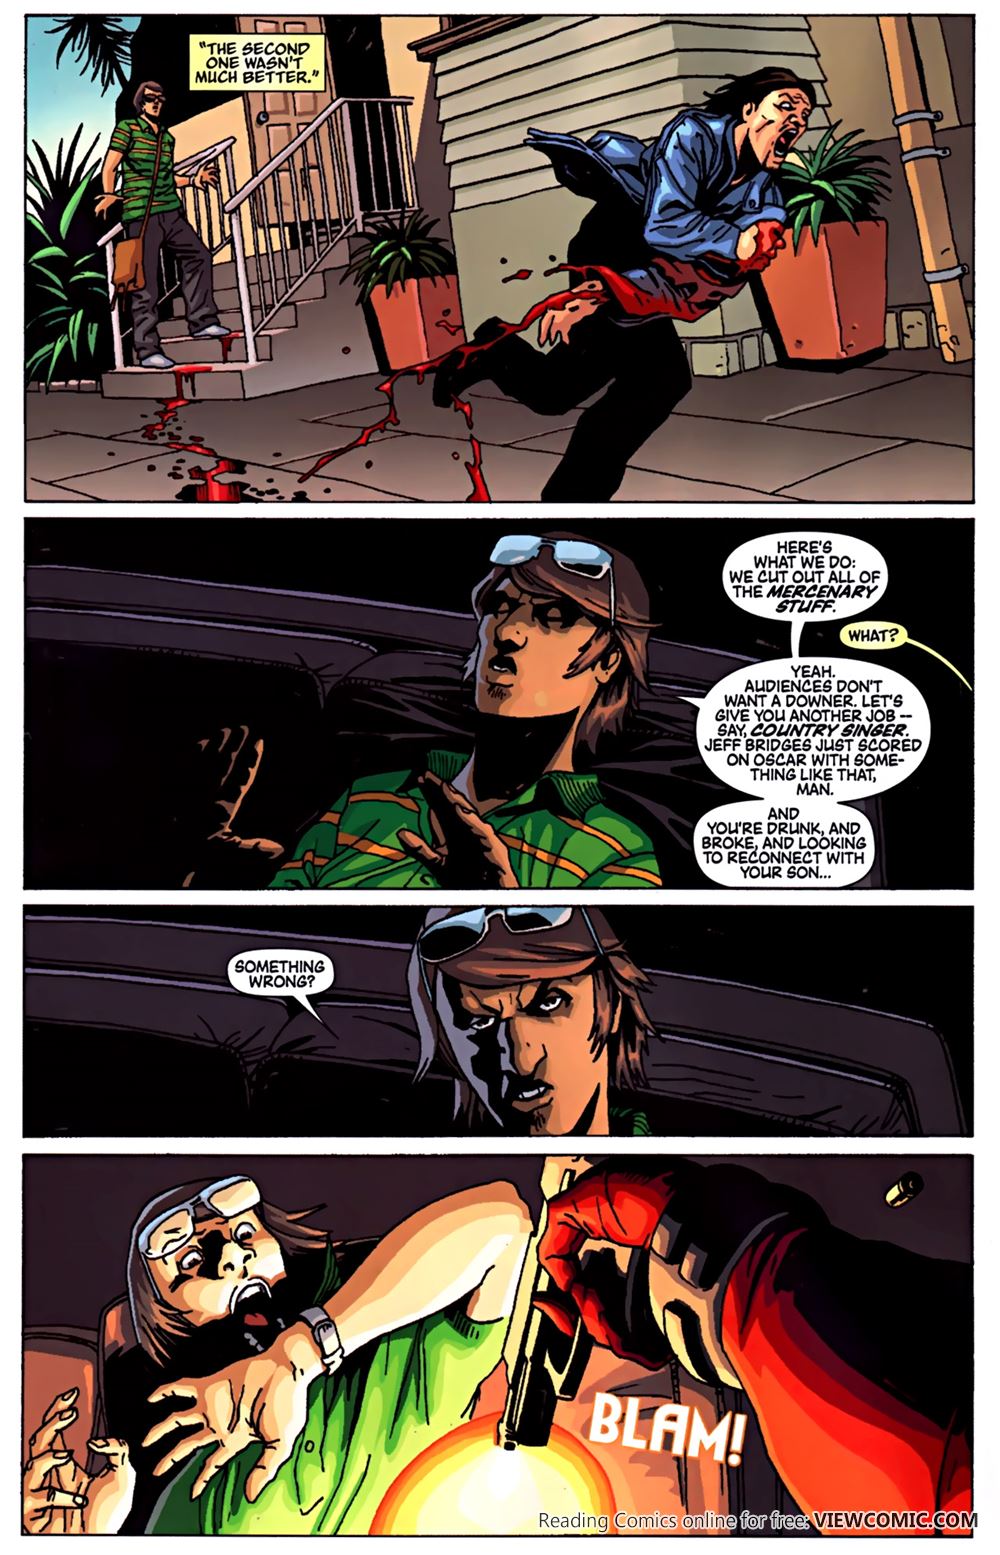 X Men Origins Deadpool 2010 Read All Comics Online For